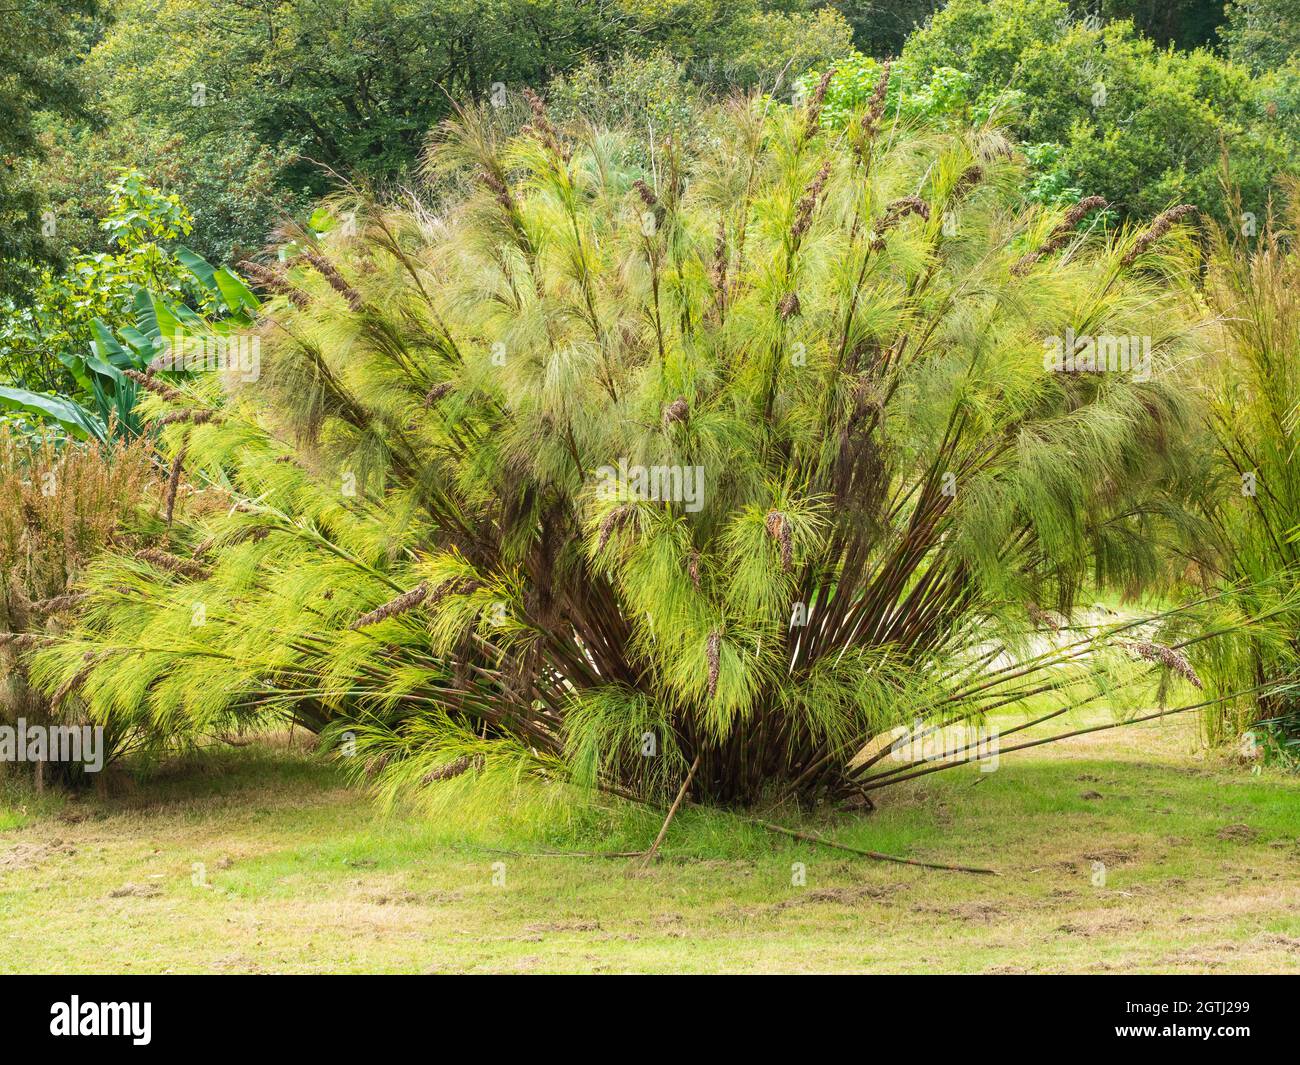 Arqueamiento, crecimiento herboso de la restio sudafricana de la cola de caballo, Elegia capensis Foto de stock